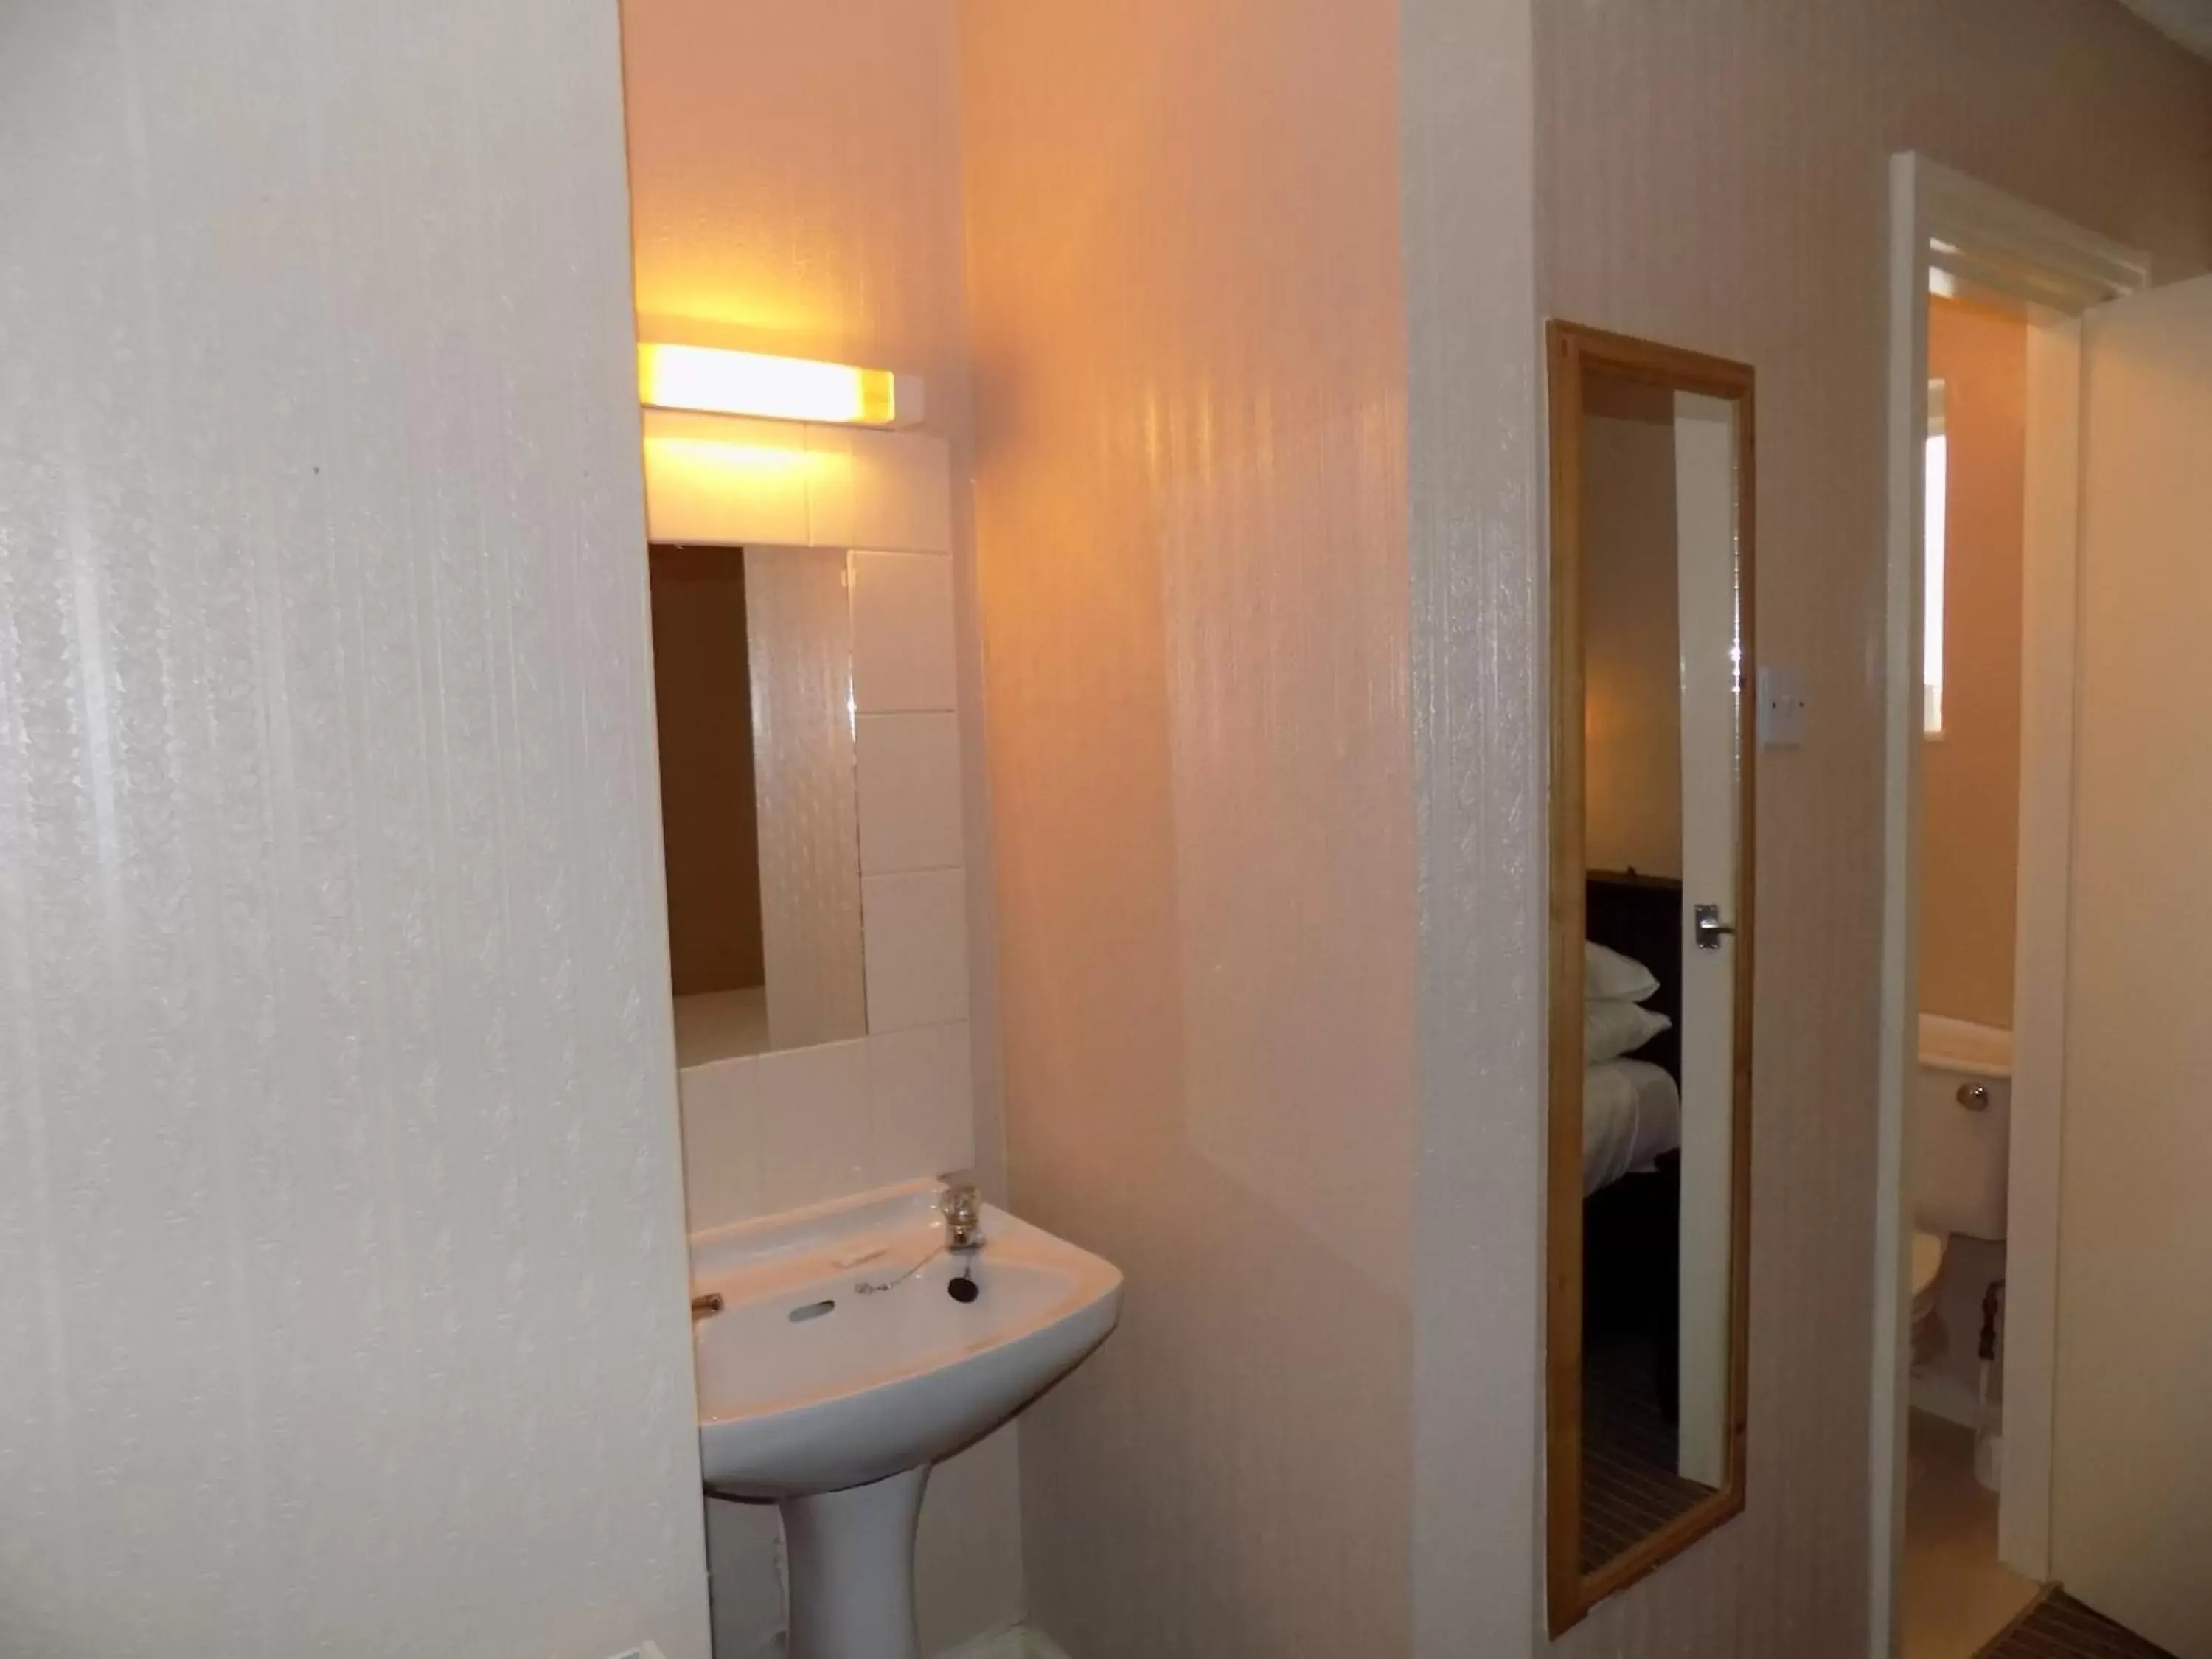 Bedroom, Bathroom in The Beechfield Hotel